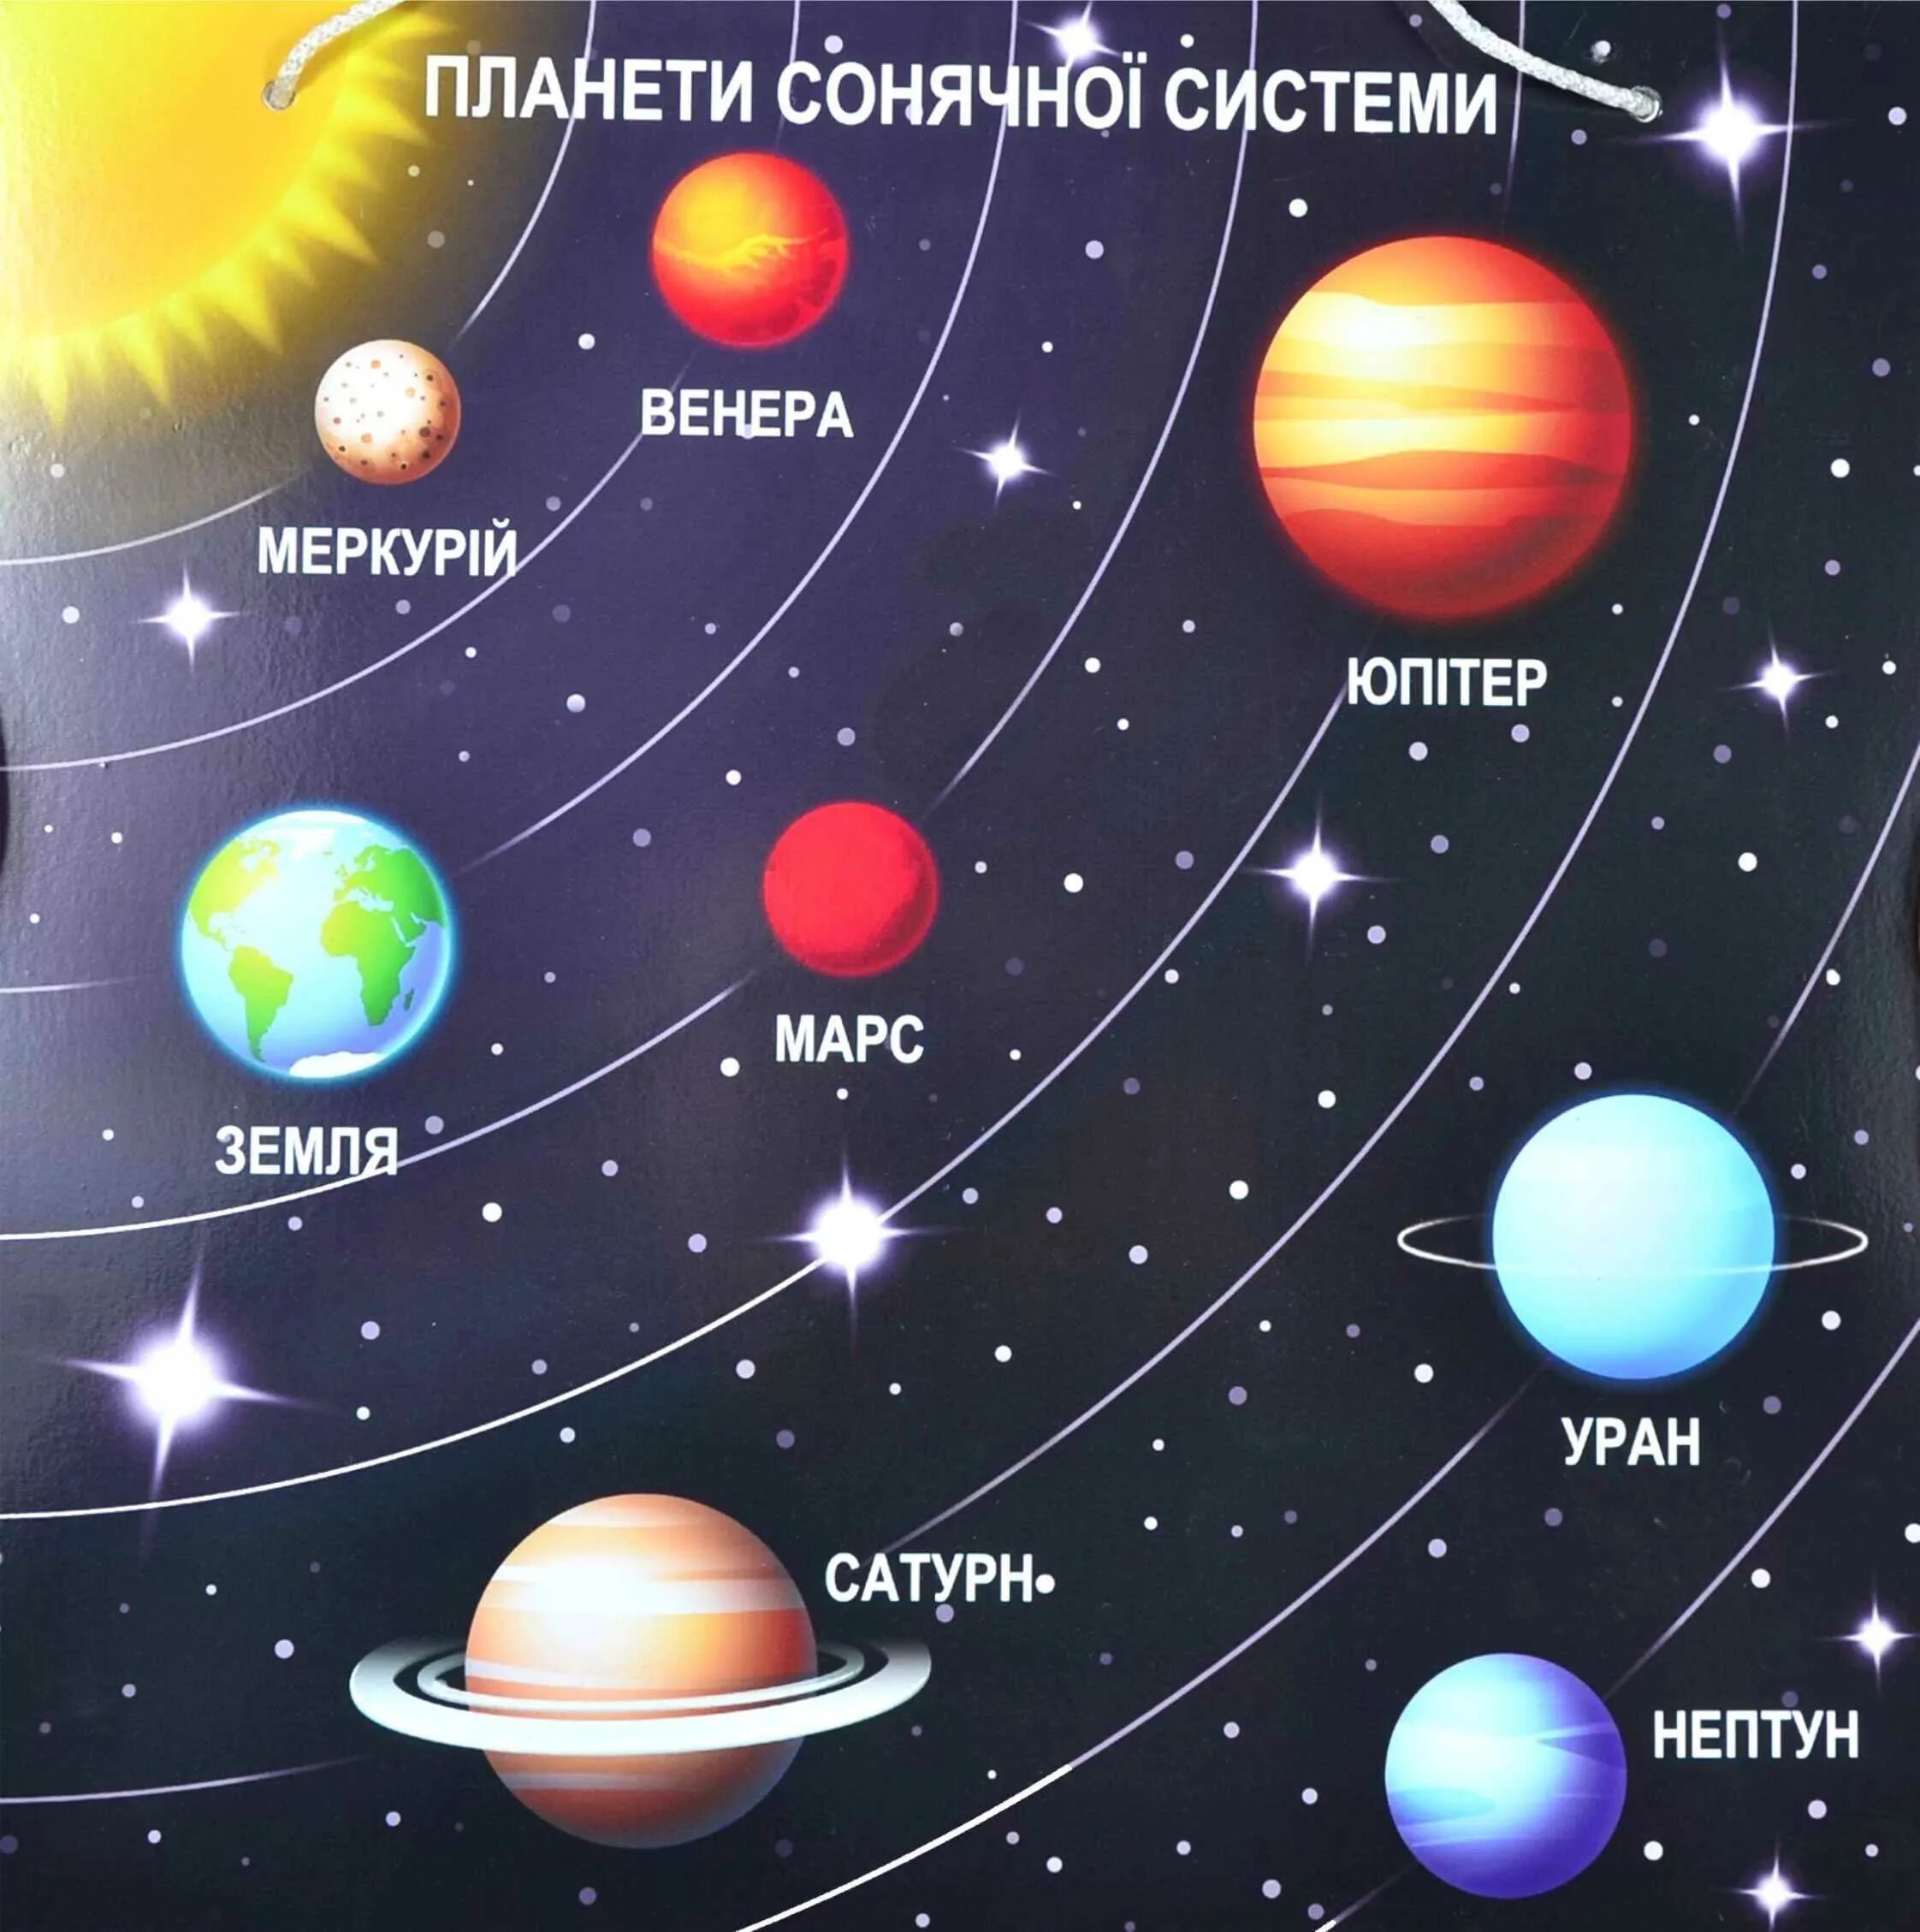 Сколько планет в солнечной системе земли. Солнечная система расположение плане. Солнечная система с названиями планет по порядку от солнца. Планеты солнечной системы по порядку от солнца с названиями для детей. Расположение планет солнечной системы.